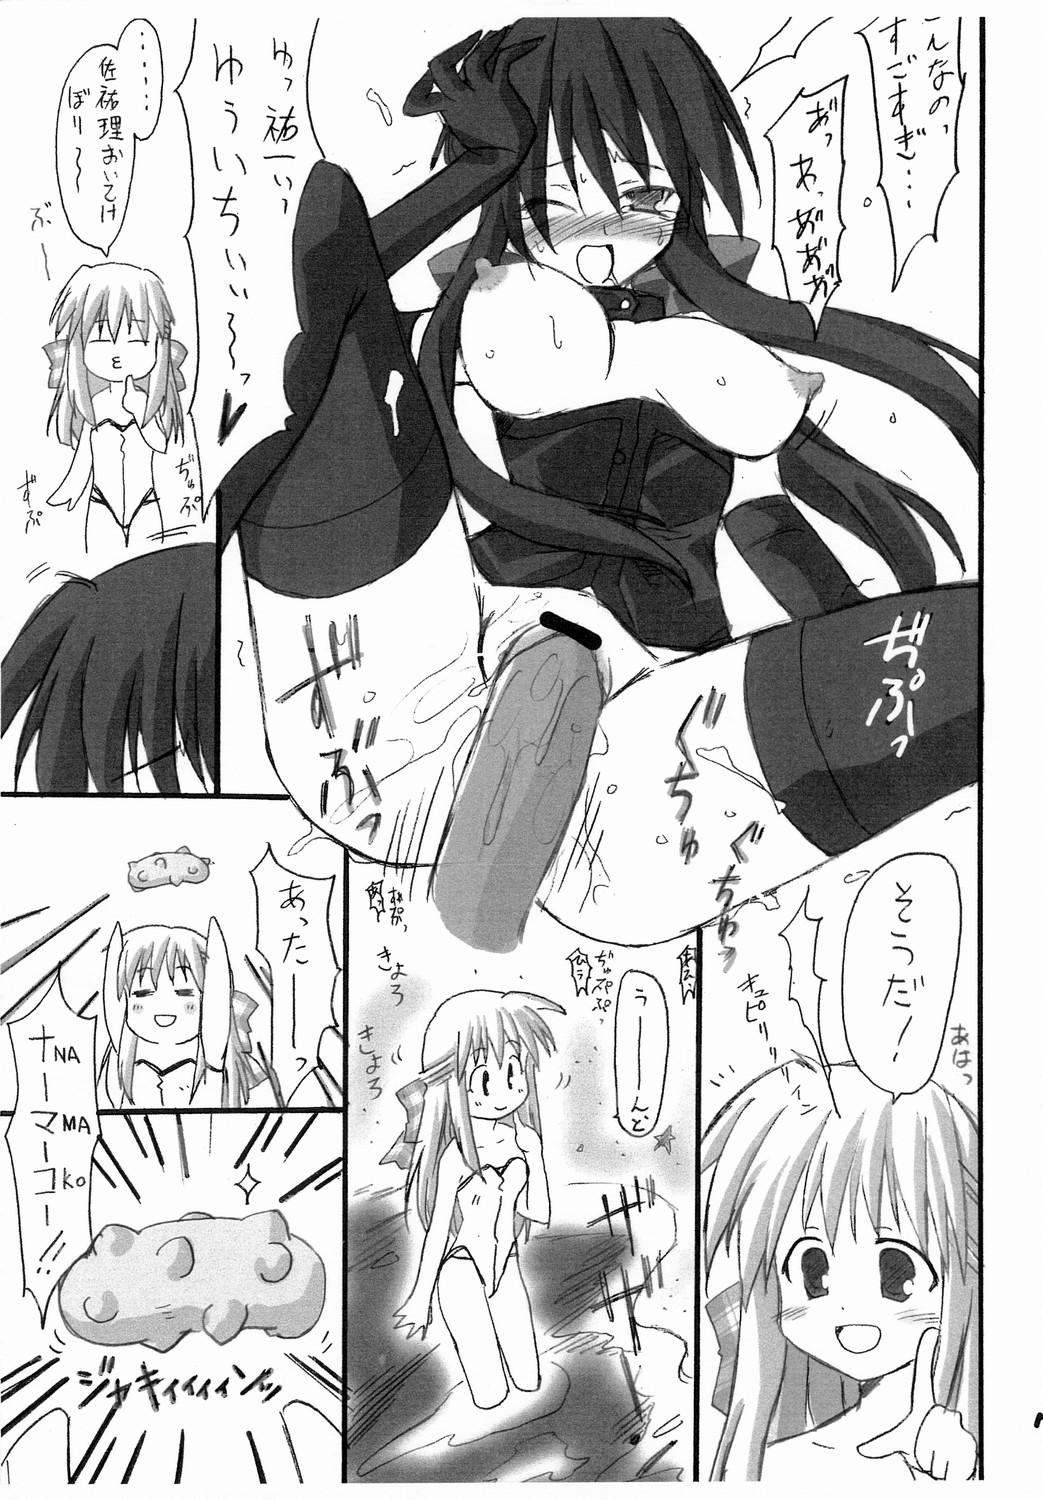 Moaning Haru na no ni - Manatsu no Usagi - Kanon Jacking Off - Page 8